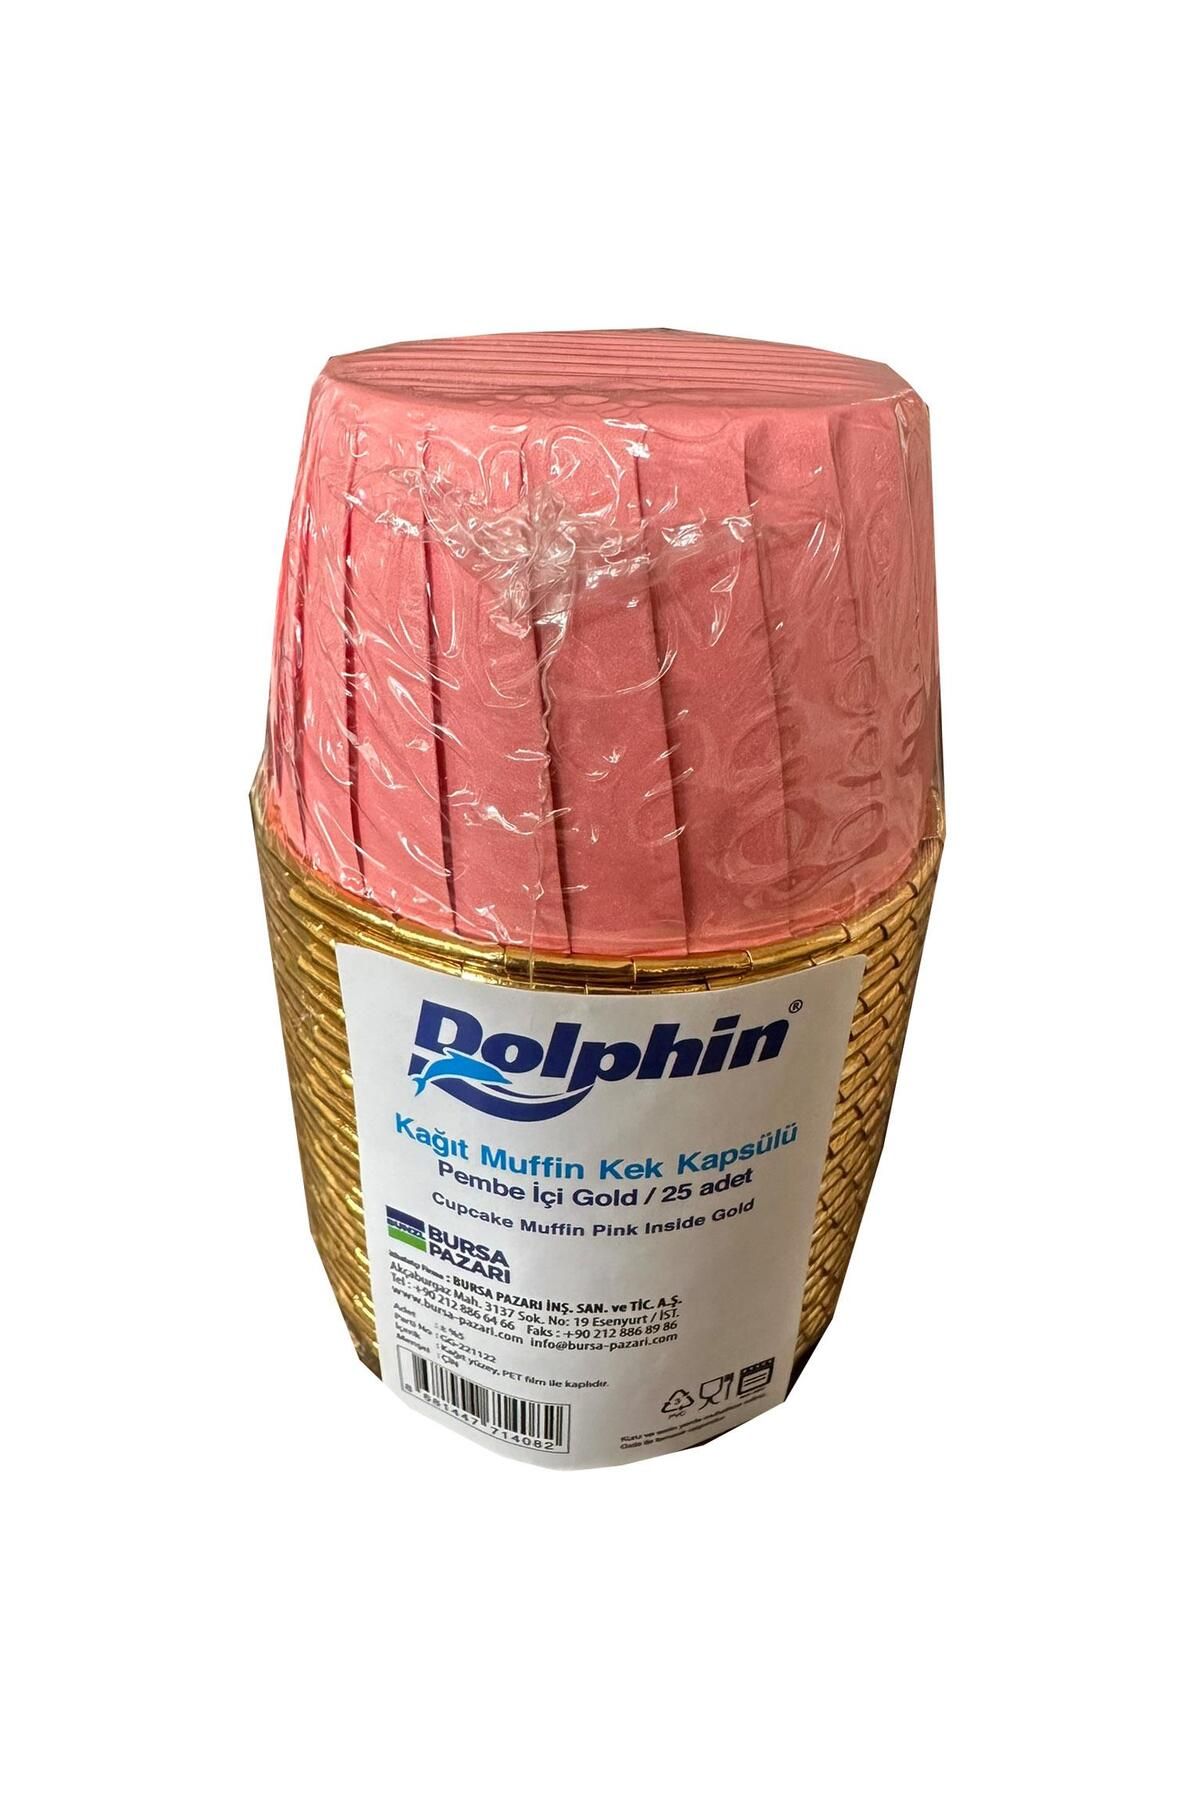 Dolphin Muffin Kağıt Karton Altın Pembe Desenli Cupcake Kek Kalıbı Kapsülü Kabı - 25 Adetlik 1 Paket